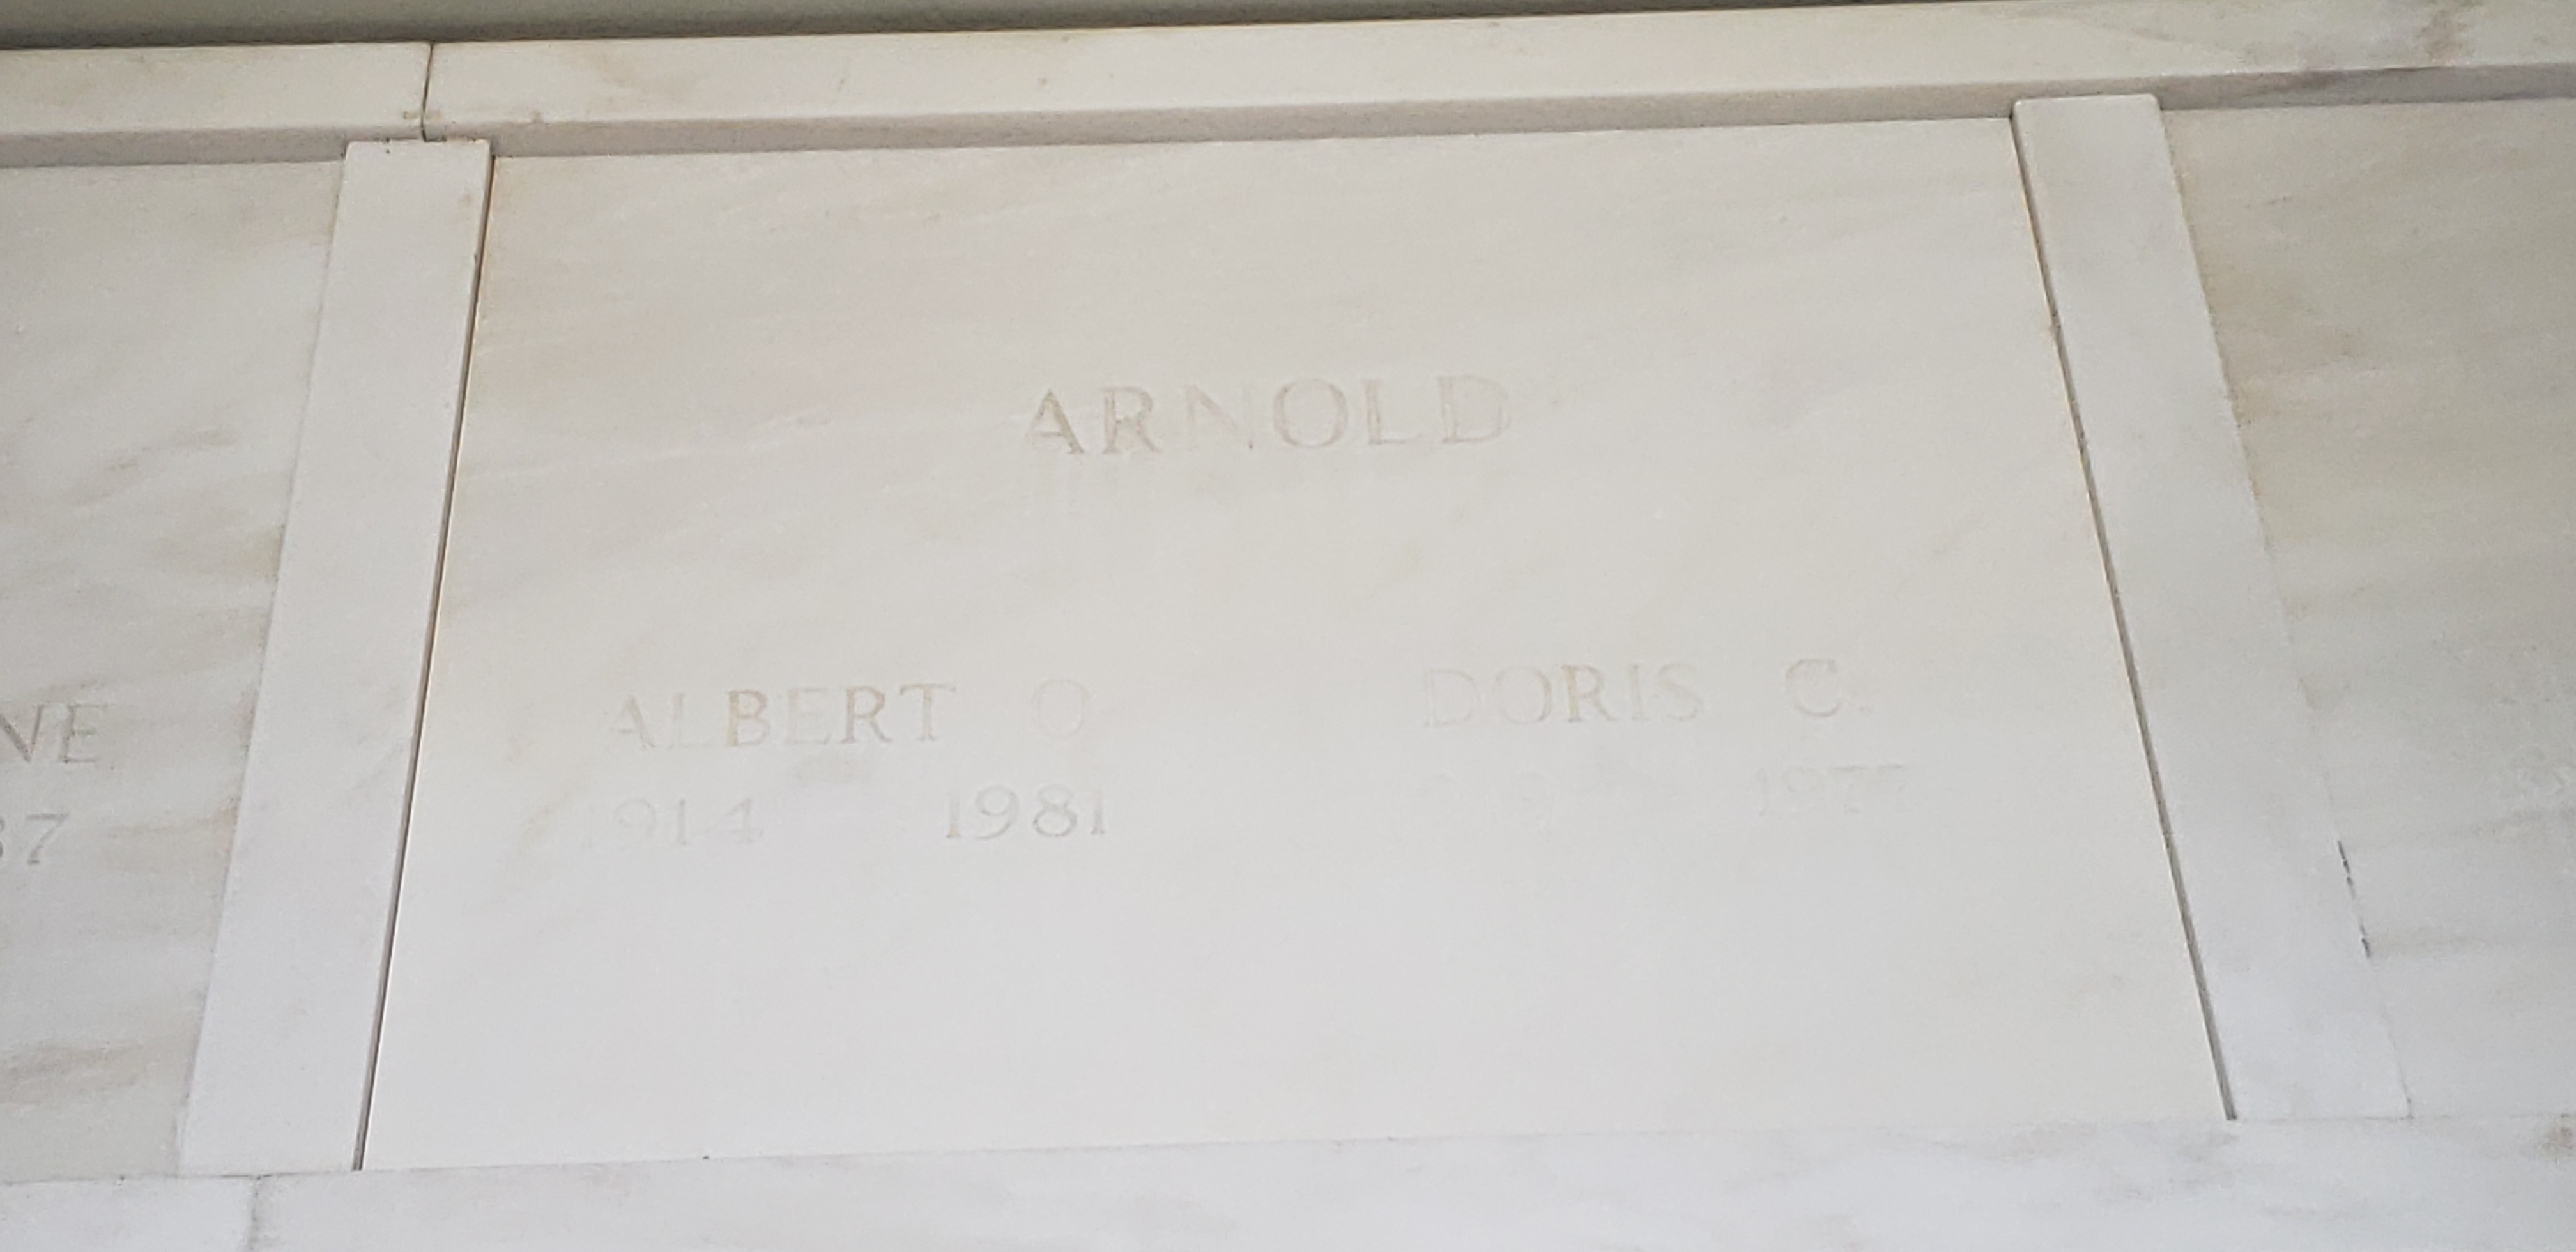 Albert O Arnold